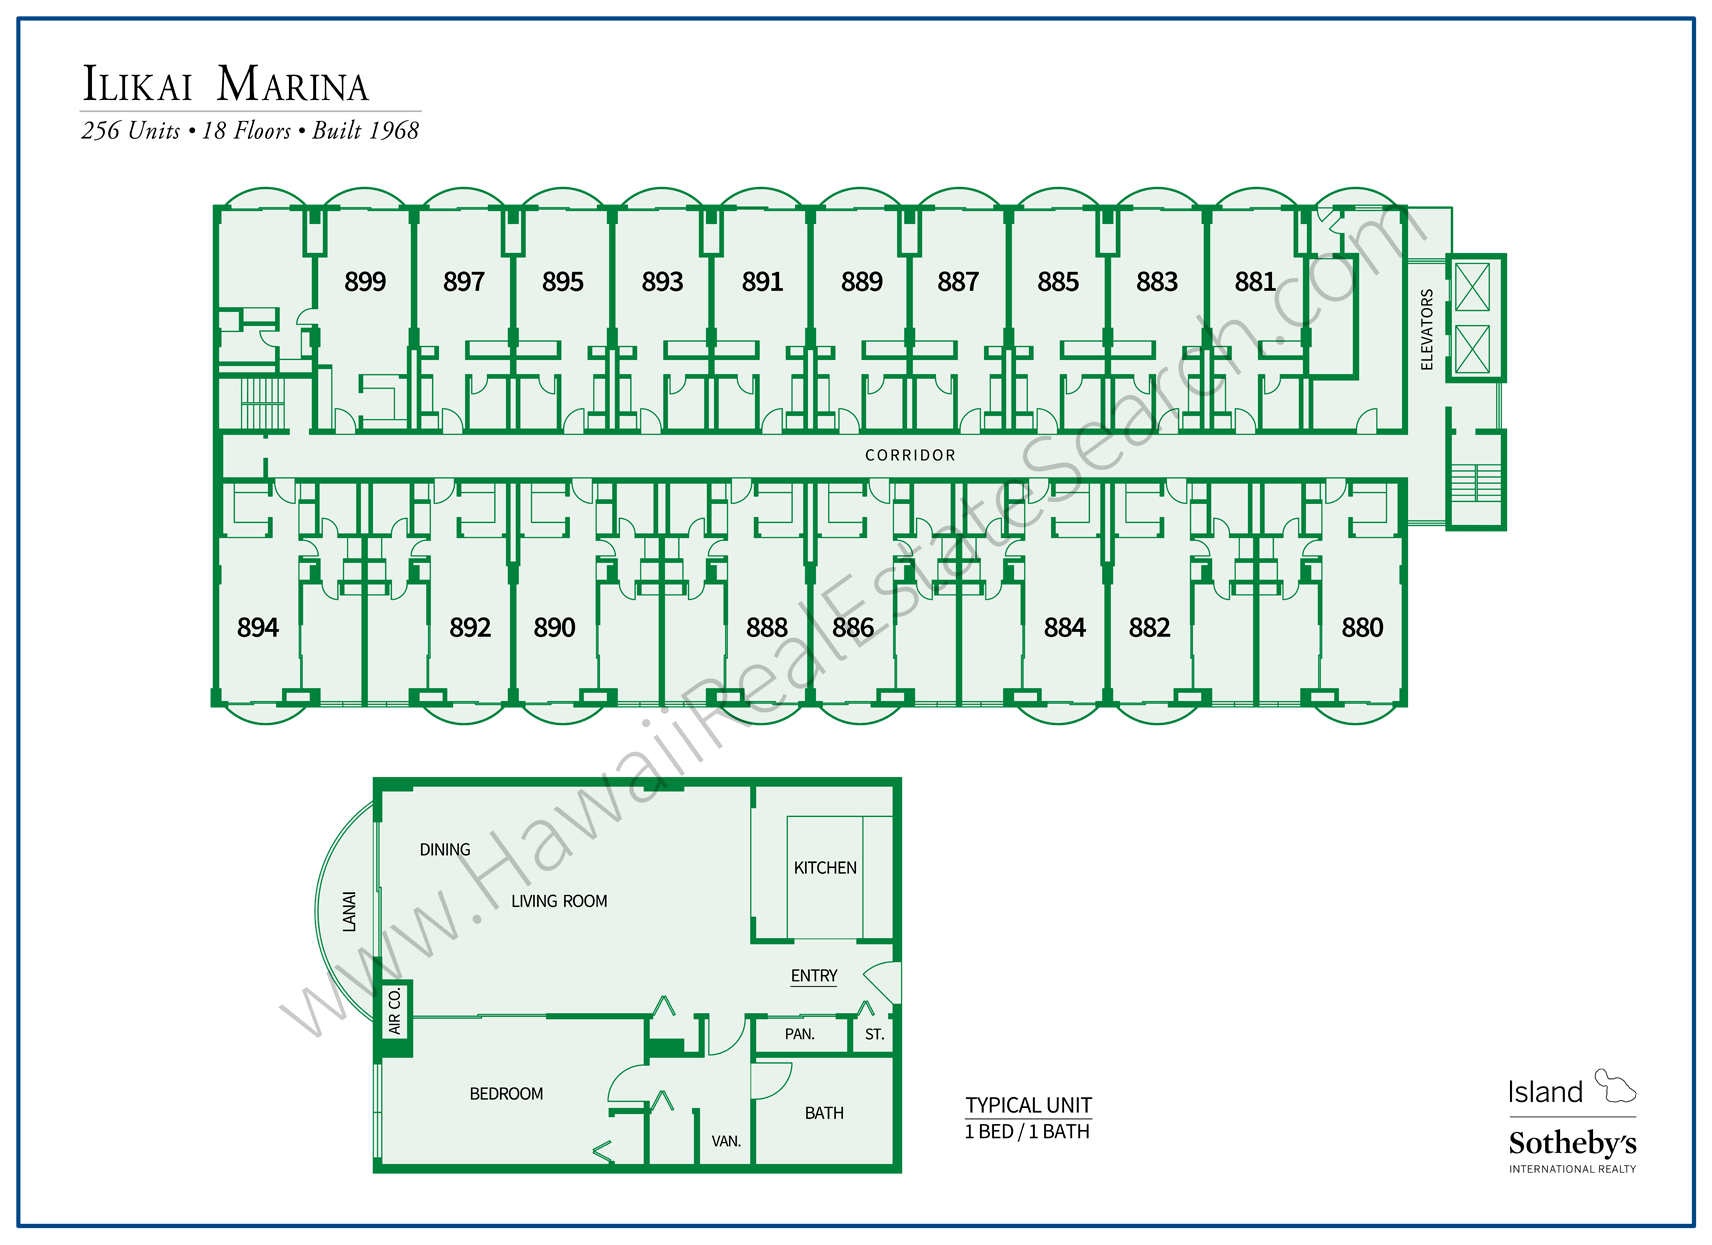 Ilikai Marina Map and Floor Plan